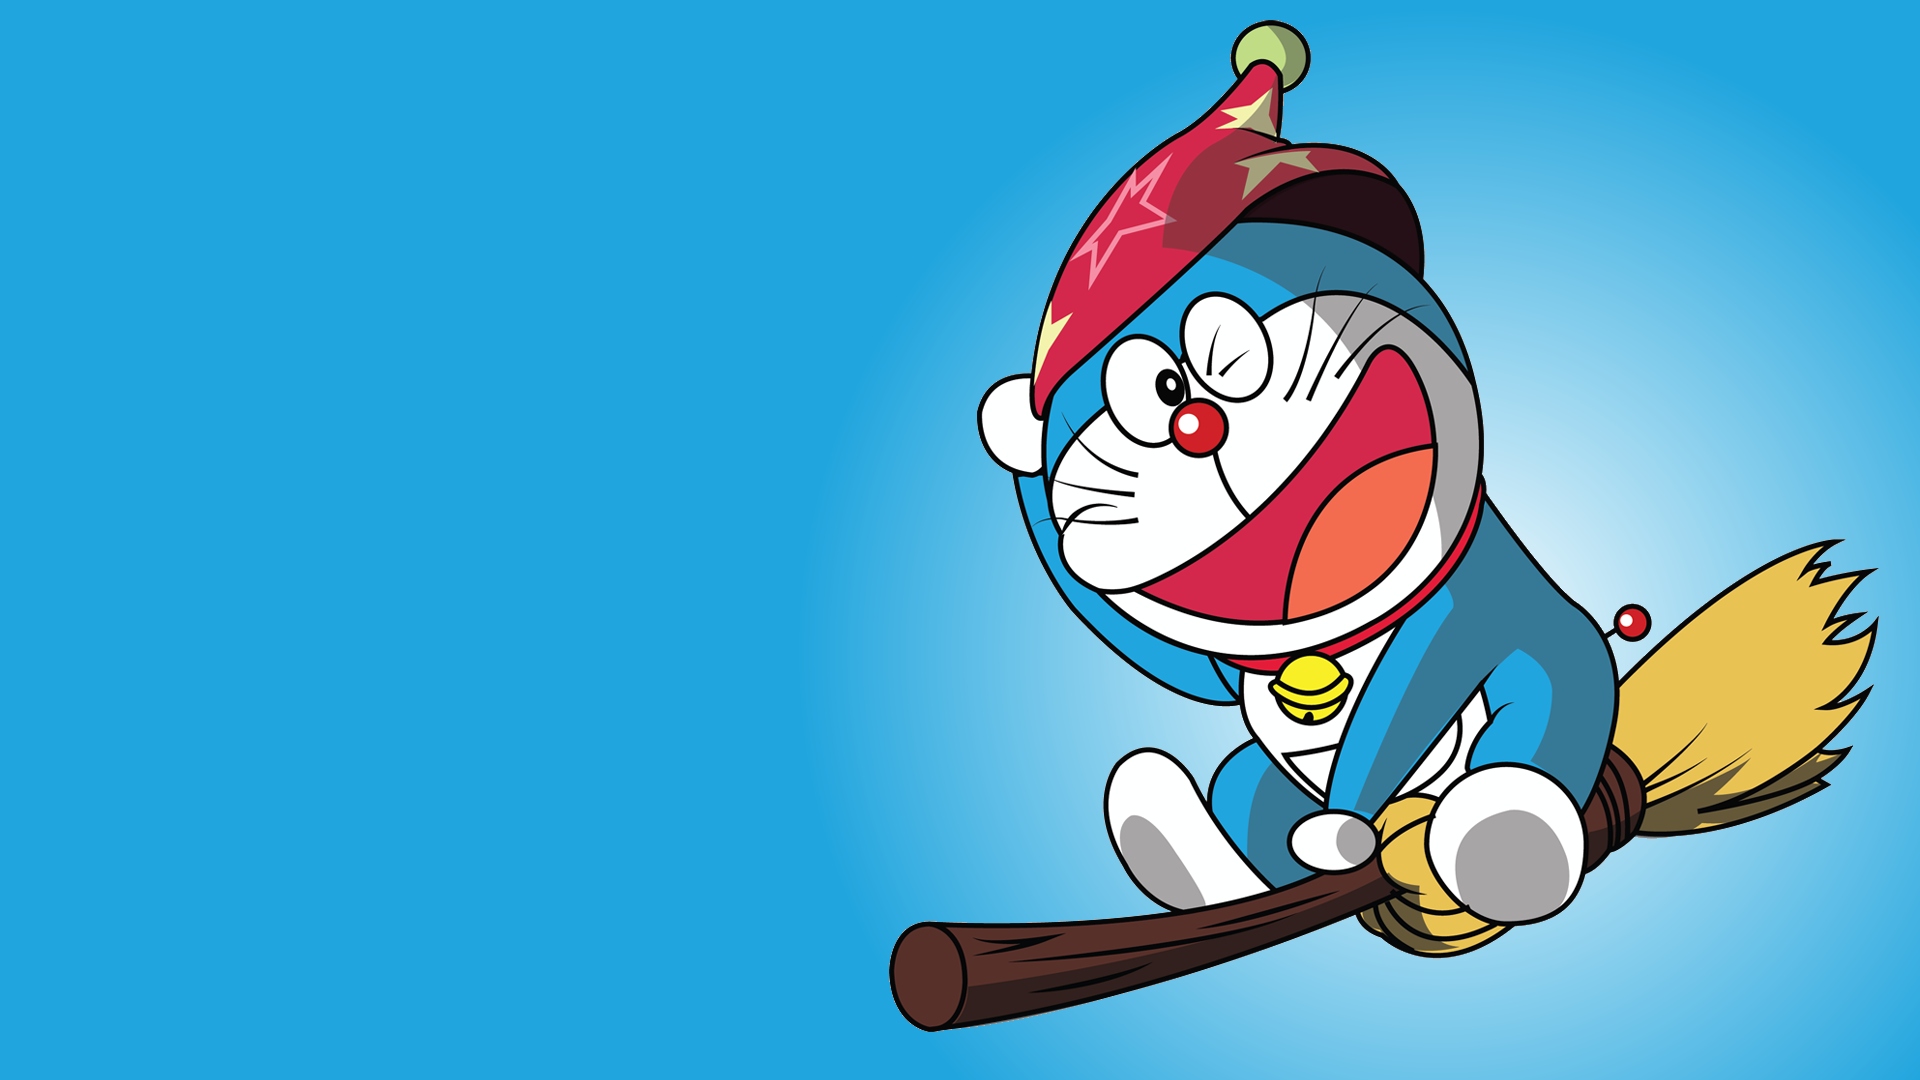 Hình ảnh của Doraemon luôn làm các fan hâm mộ trẻ trung và vui vẻ. Và giờ đây, bạn có thể tải miễn phí bức hình Pics Photos Hd Wallpapers Doremon Cartoon HD để được chiêm ngưỡng những khoảnh khắc đáng yêu và hài hước của chú mèo máy huyền thoại này.